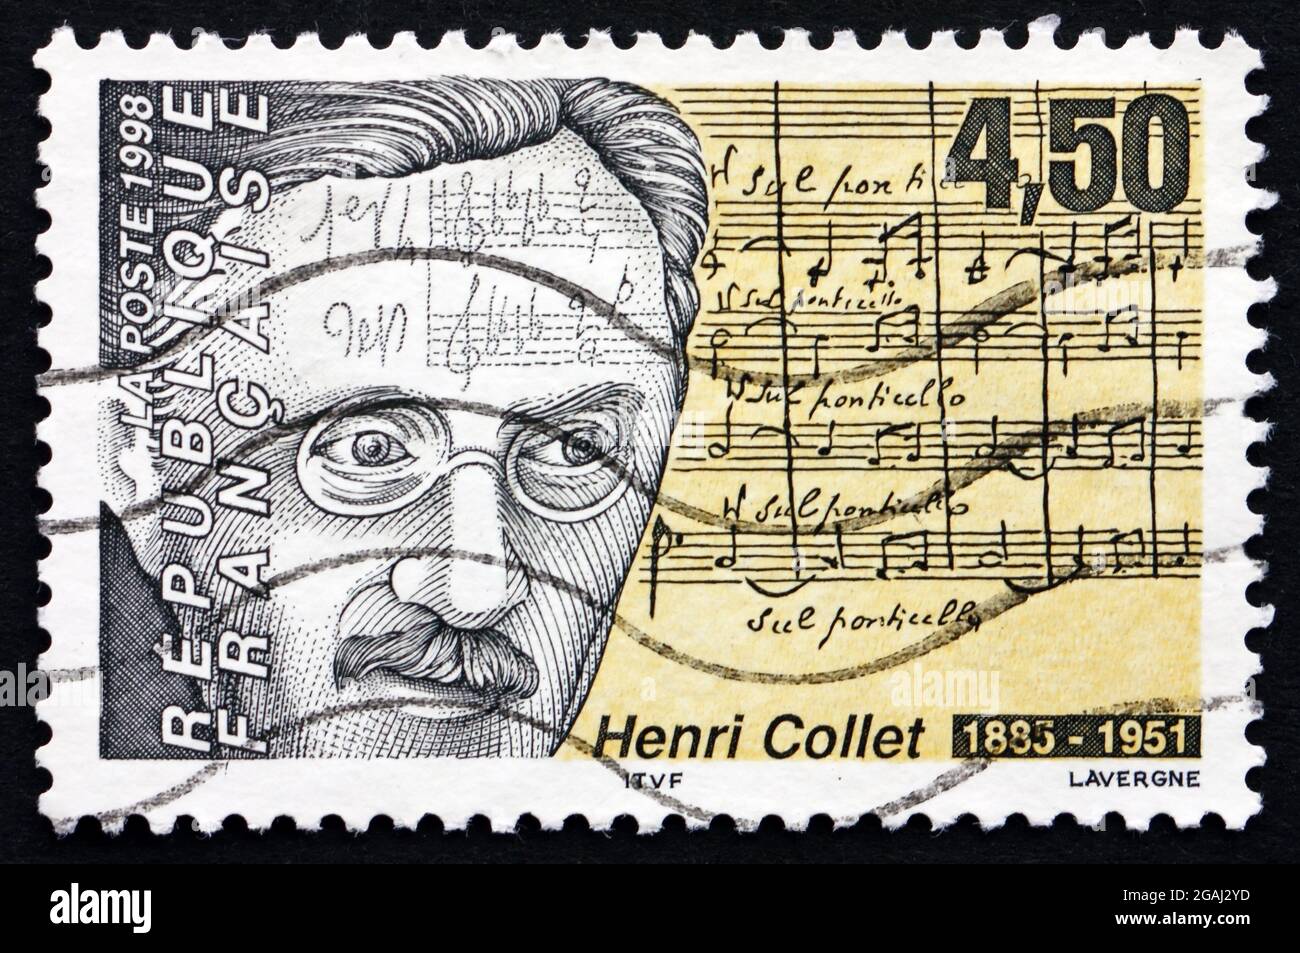 FRANCE - VERS 1998 : un timbre imprimé en France montre Henri Collet, compositeur français et critique musical, vers 1998 Banque D'Images